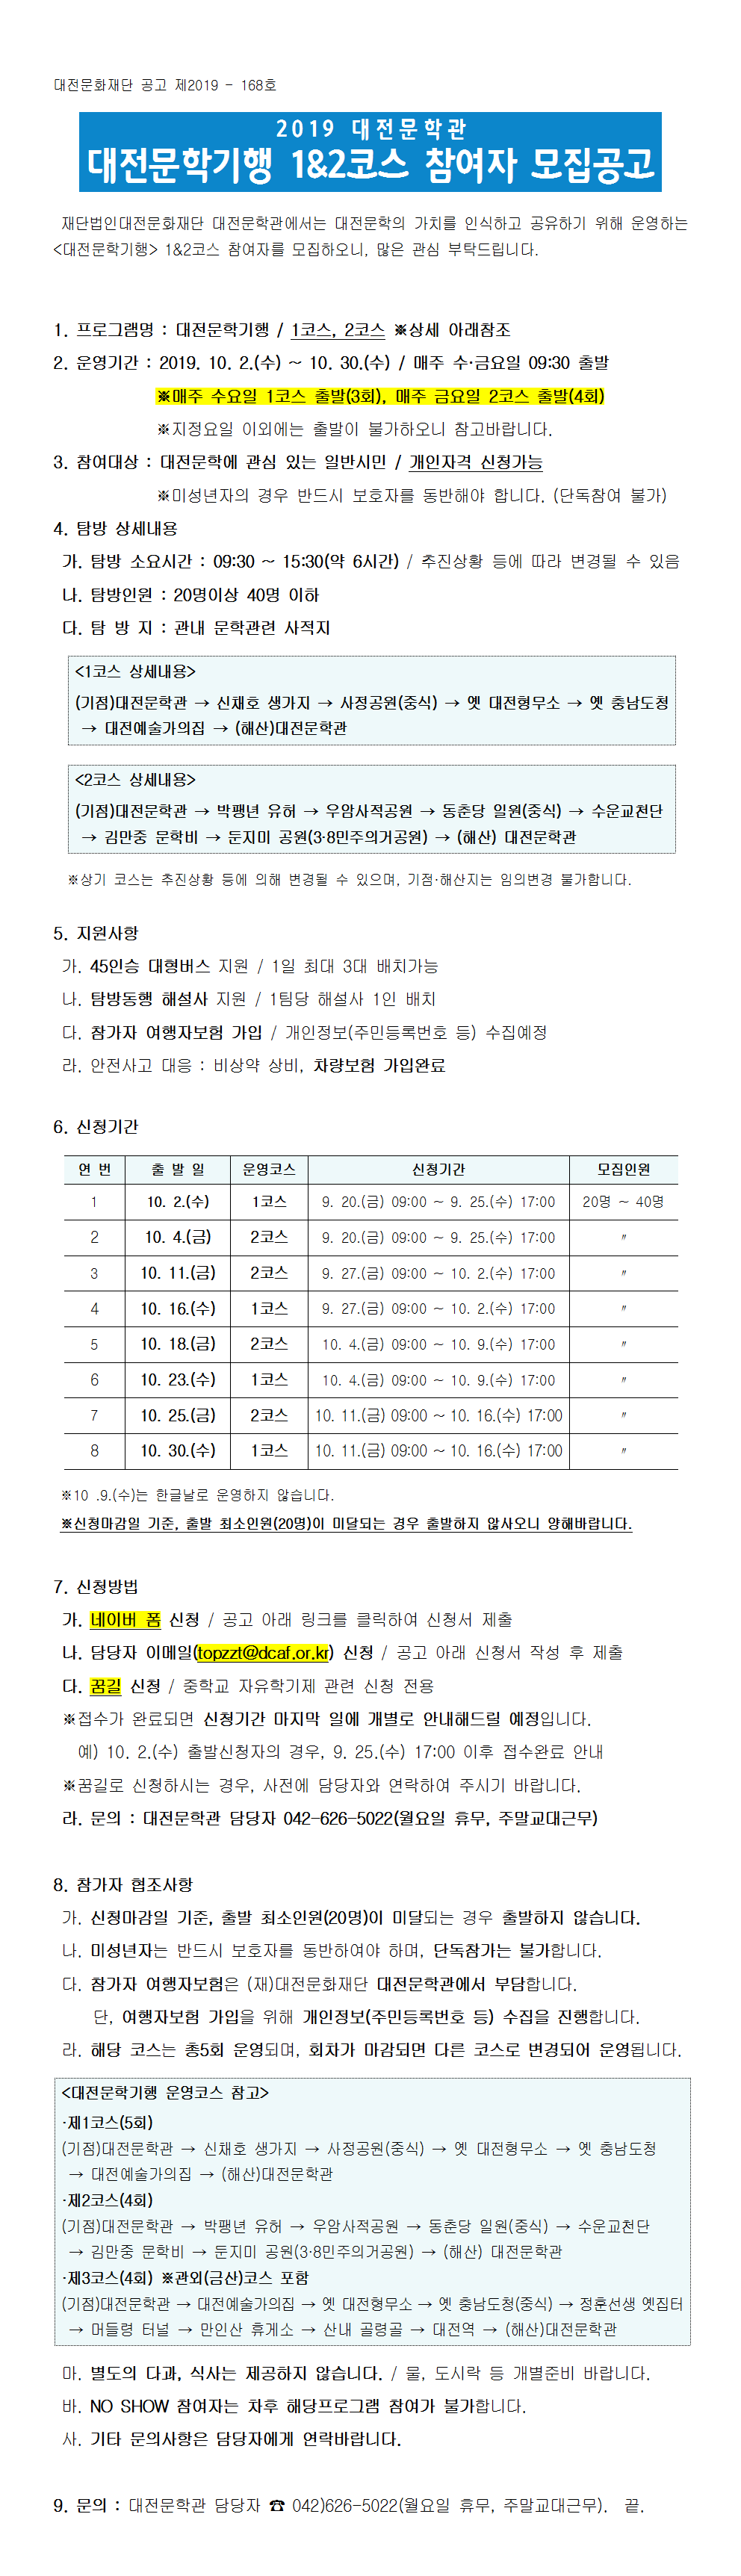 2019 대전문학관 1_2코스 대전문학기행 참여자 모집공고